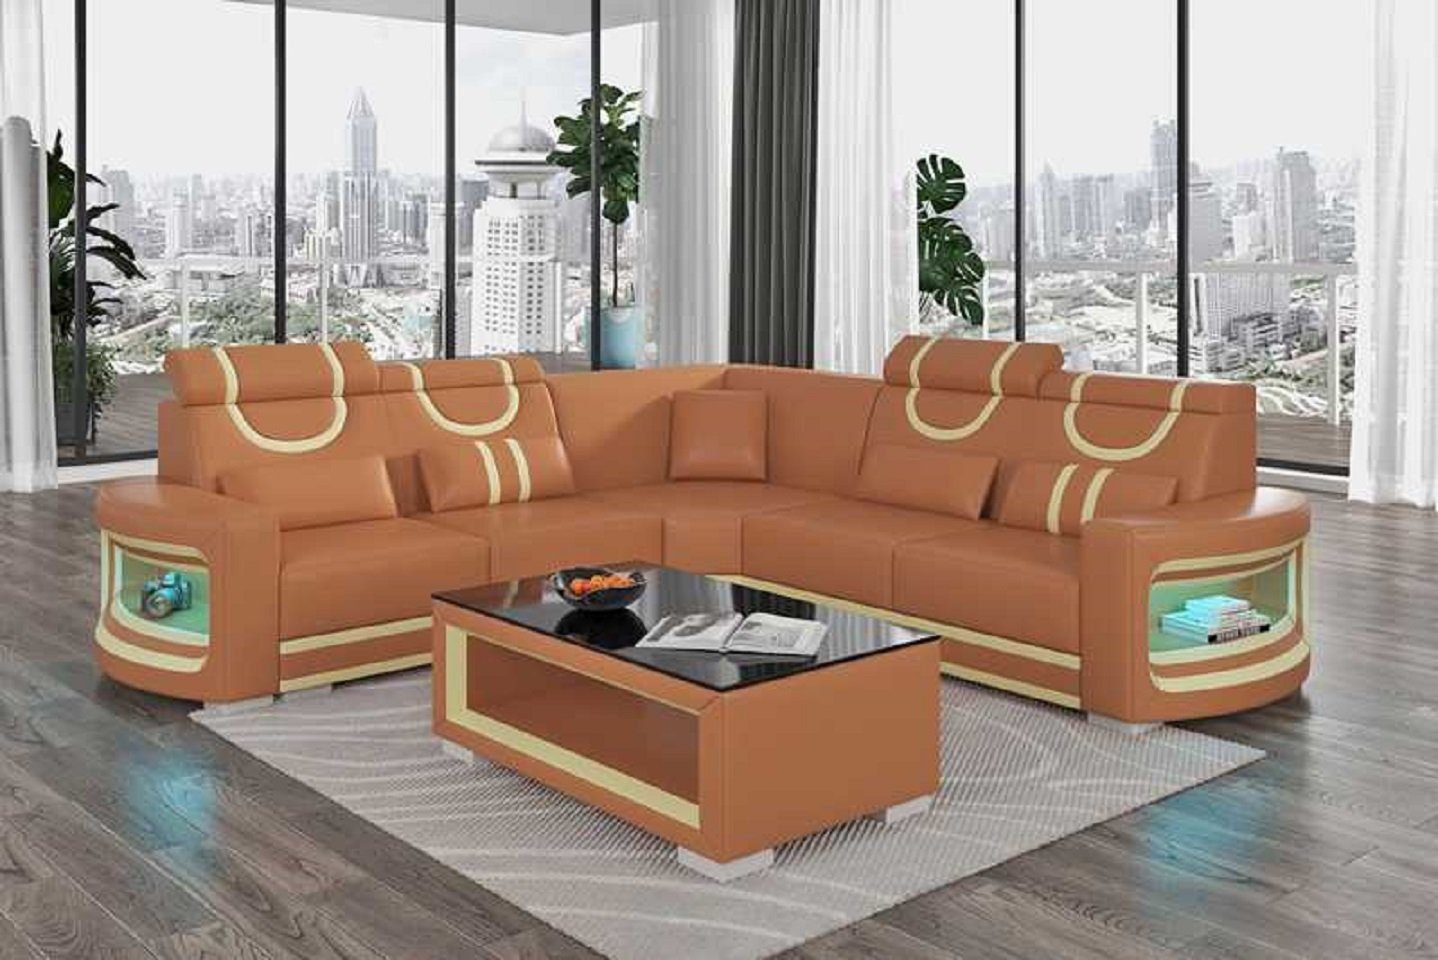 Braun L Couch Design Teile, Ecksofa JVmoebel in Neu, 3 Made Europe Ecksofa Form Sofa Modern Luxus Wohnzimmer